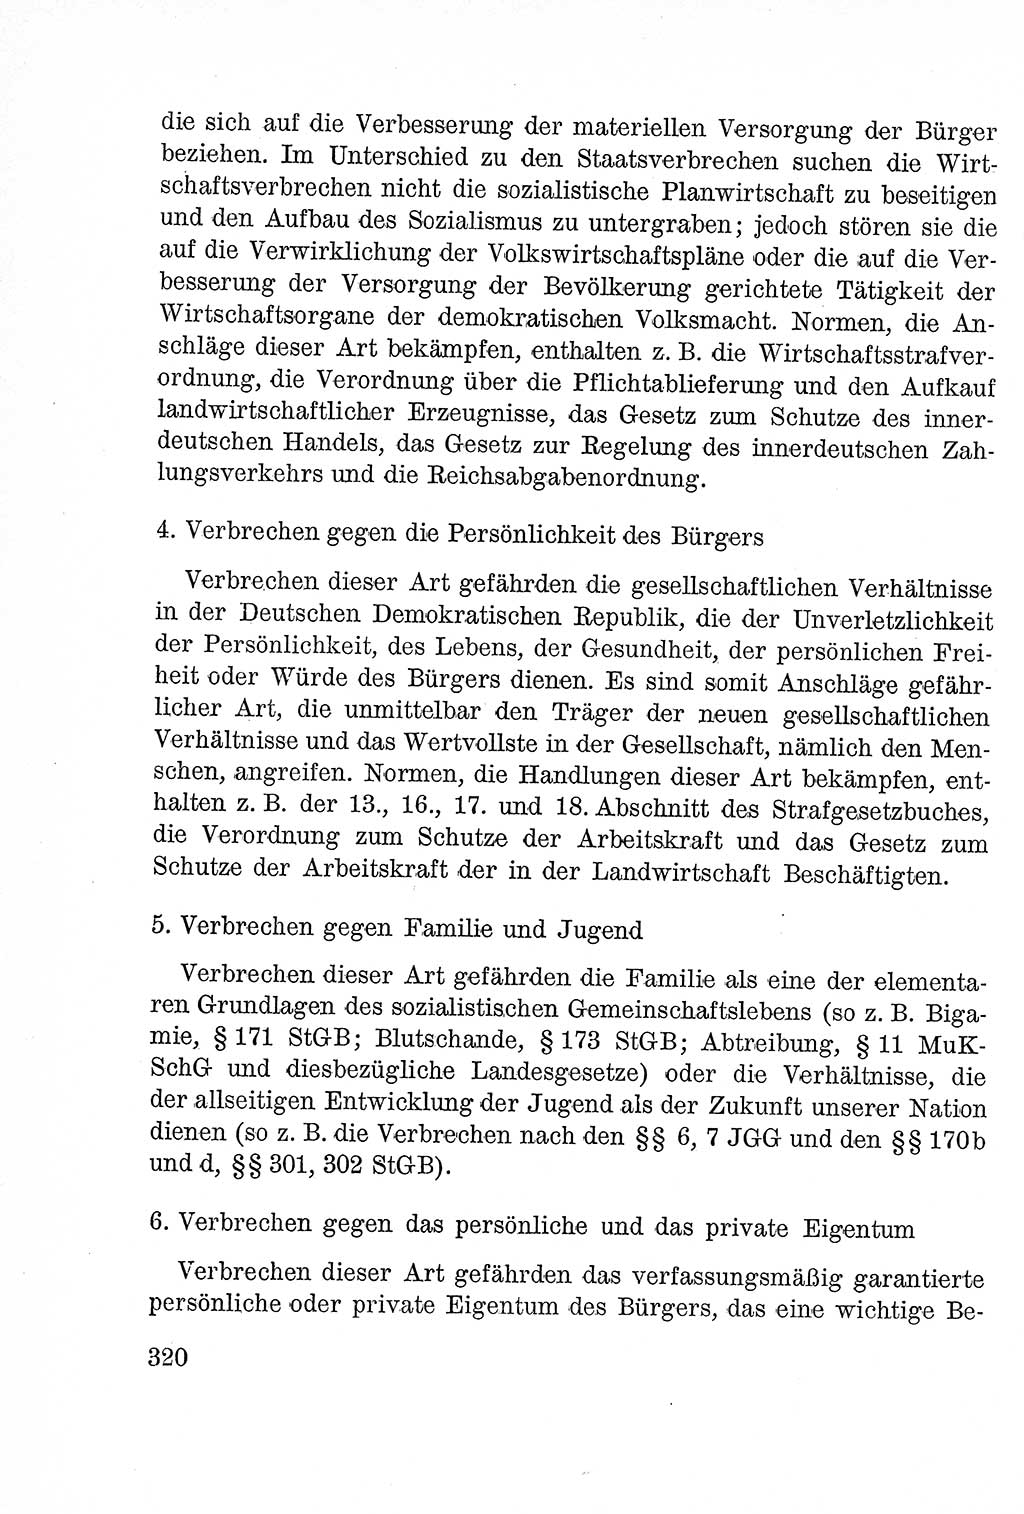 Lehrbuch des Strafrechts der Deutschen Demokratischen Republik (DDR), Allgemeiner Teil 1957, Seite 320 (Lb. Strafr. DDR AT 1957, S. 320)